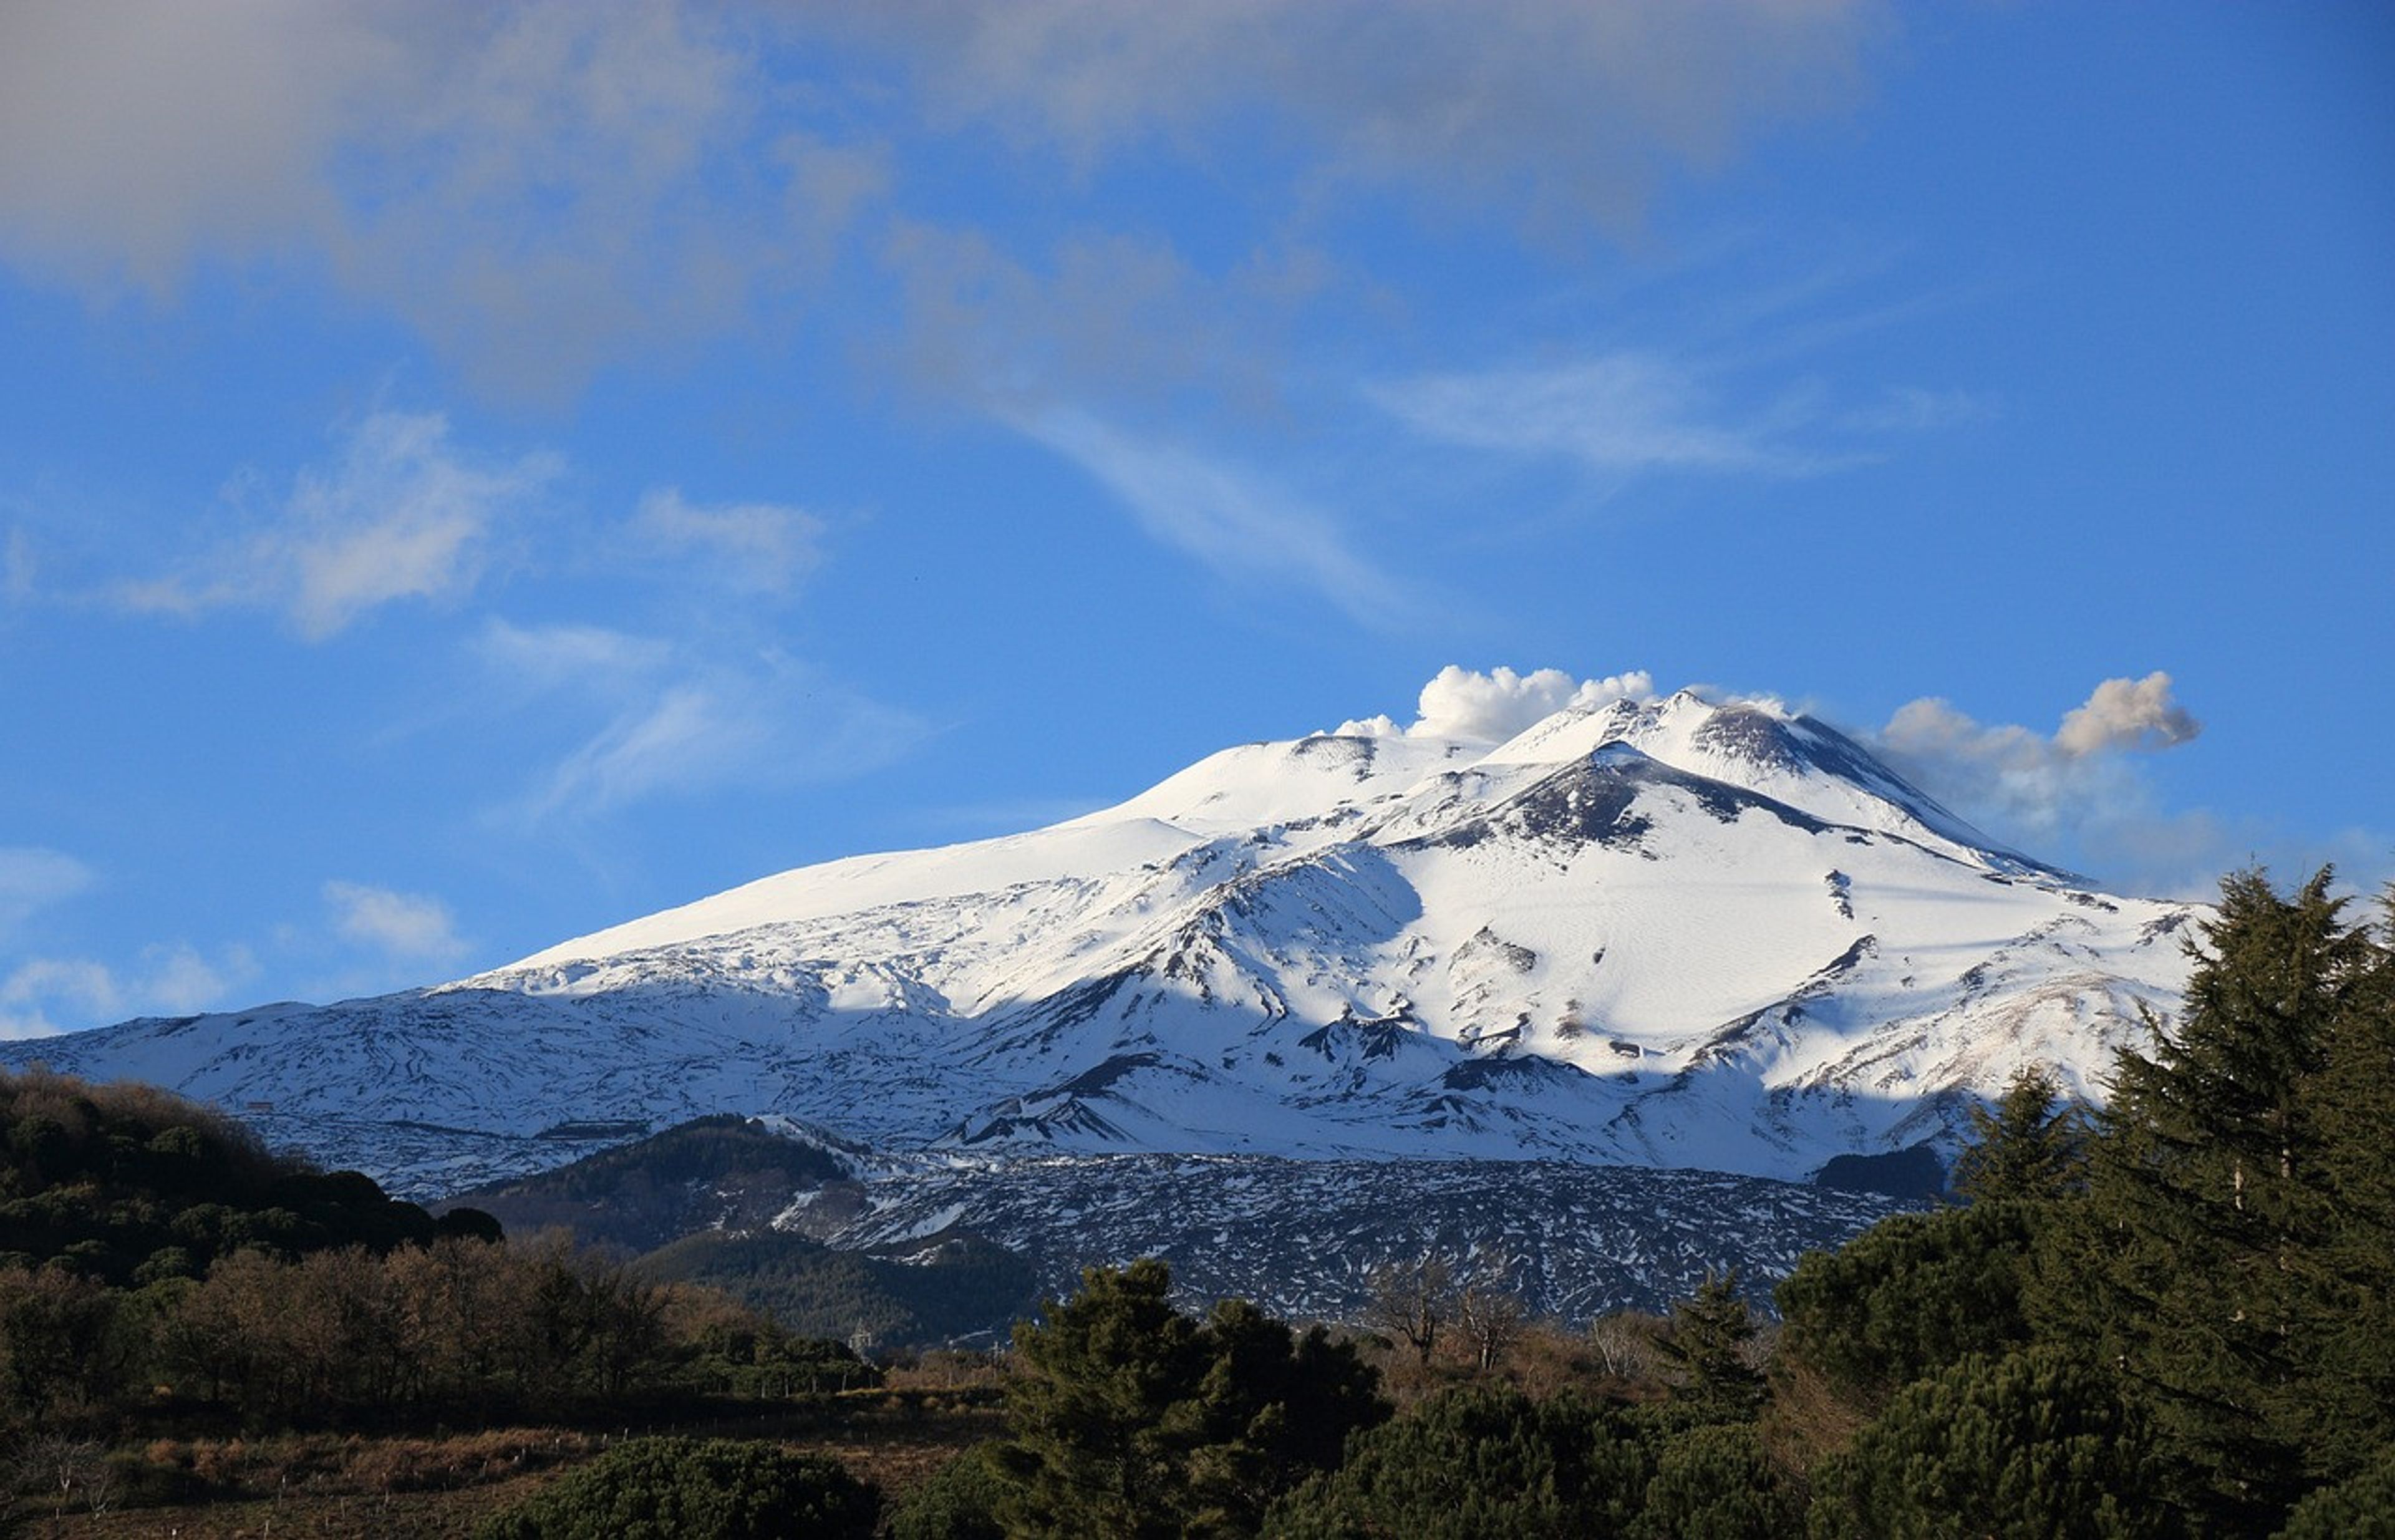 Etna volcano covered in snow